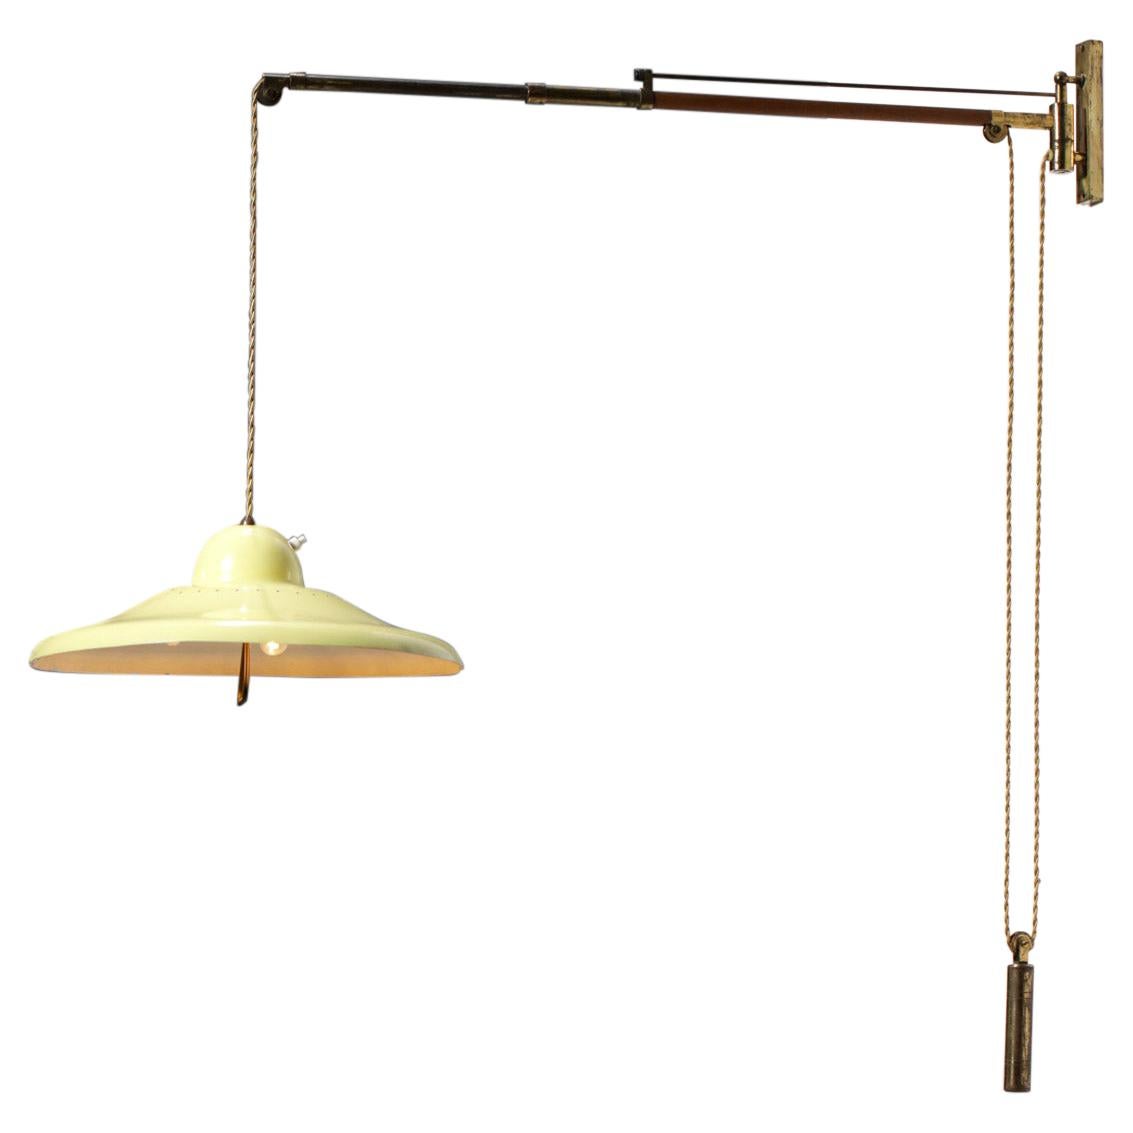 Italienische Lampe aus der italienischen Periode im Arredoluce-Stil mit gelbem Pulley - F078